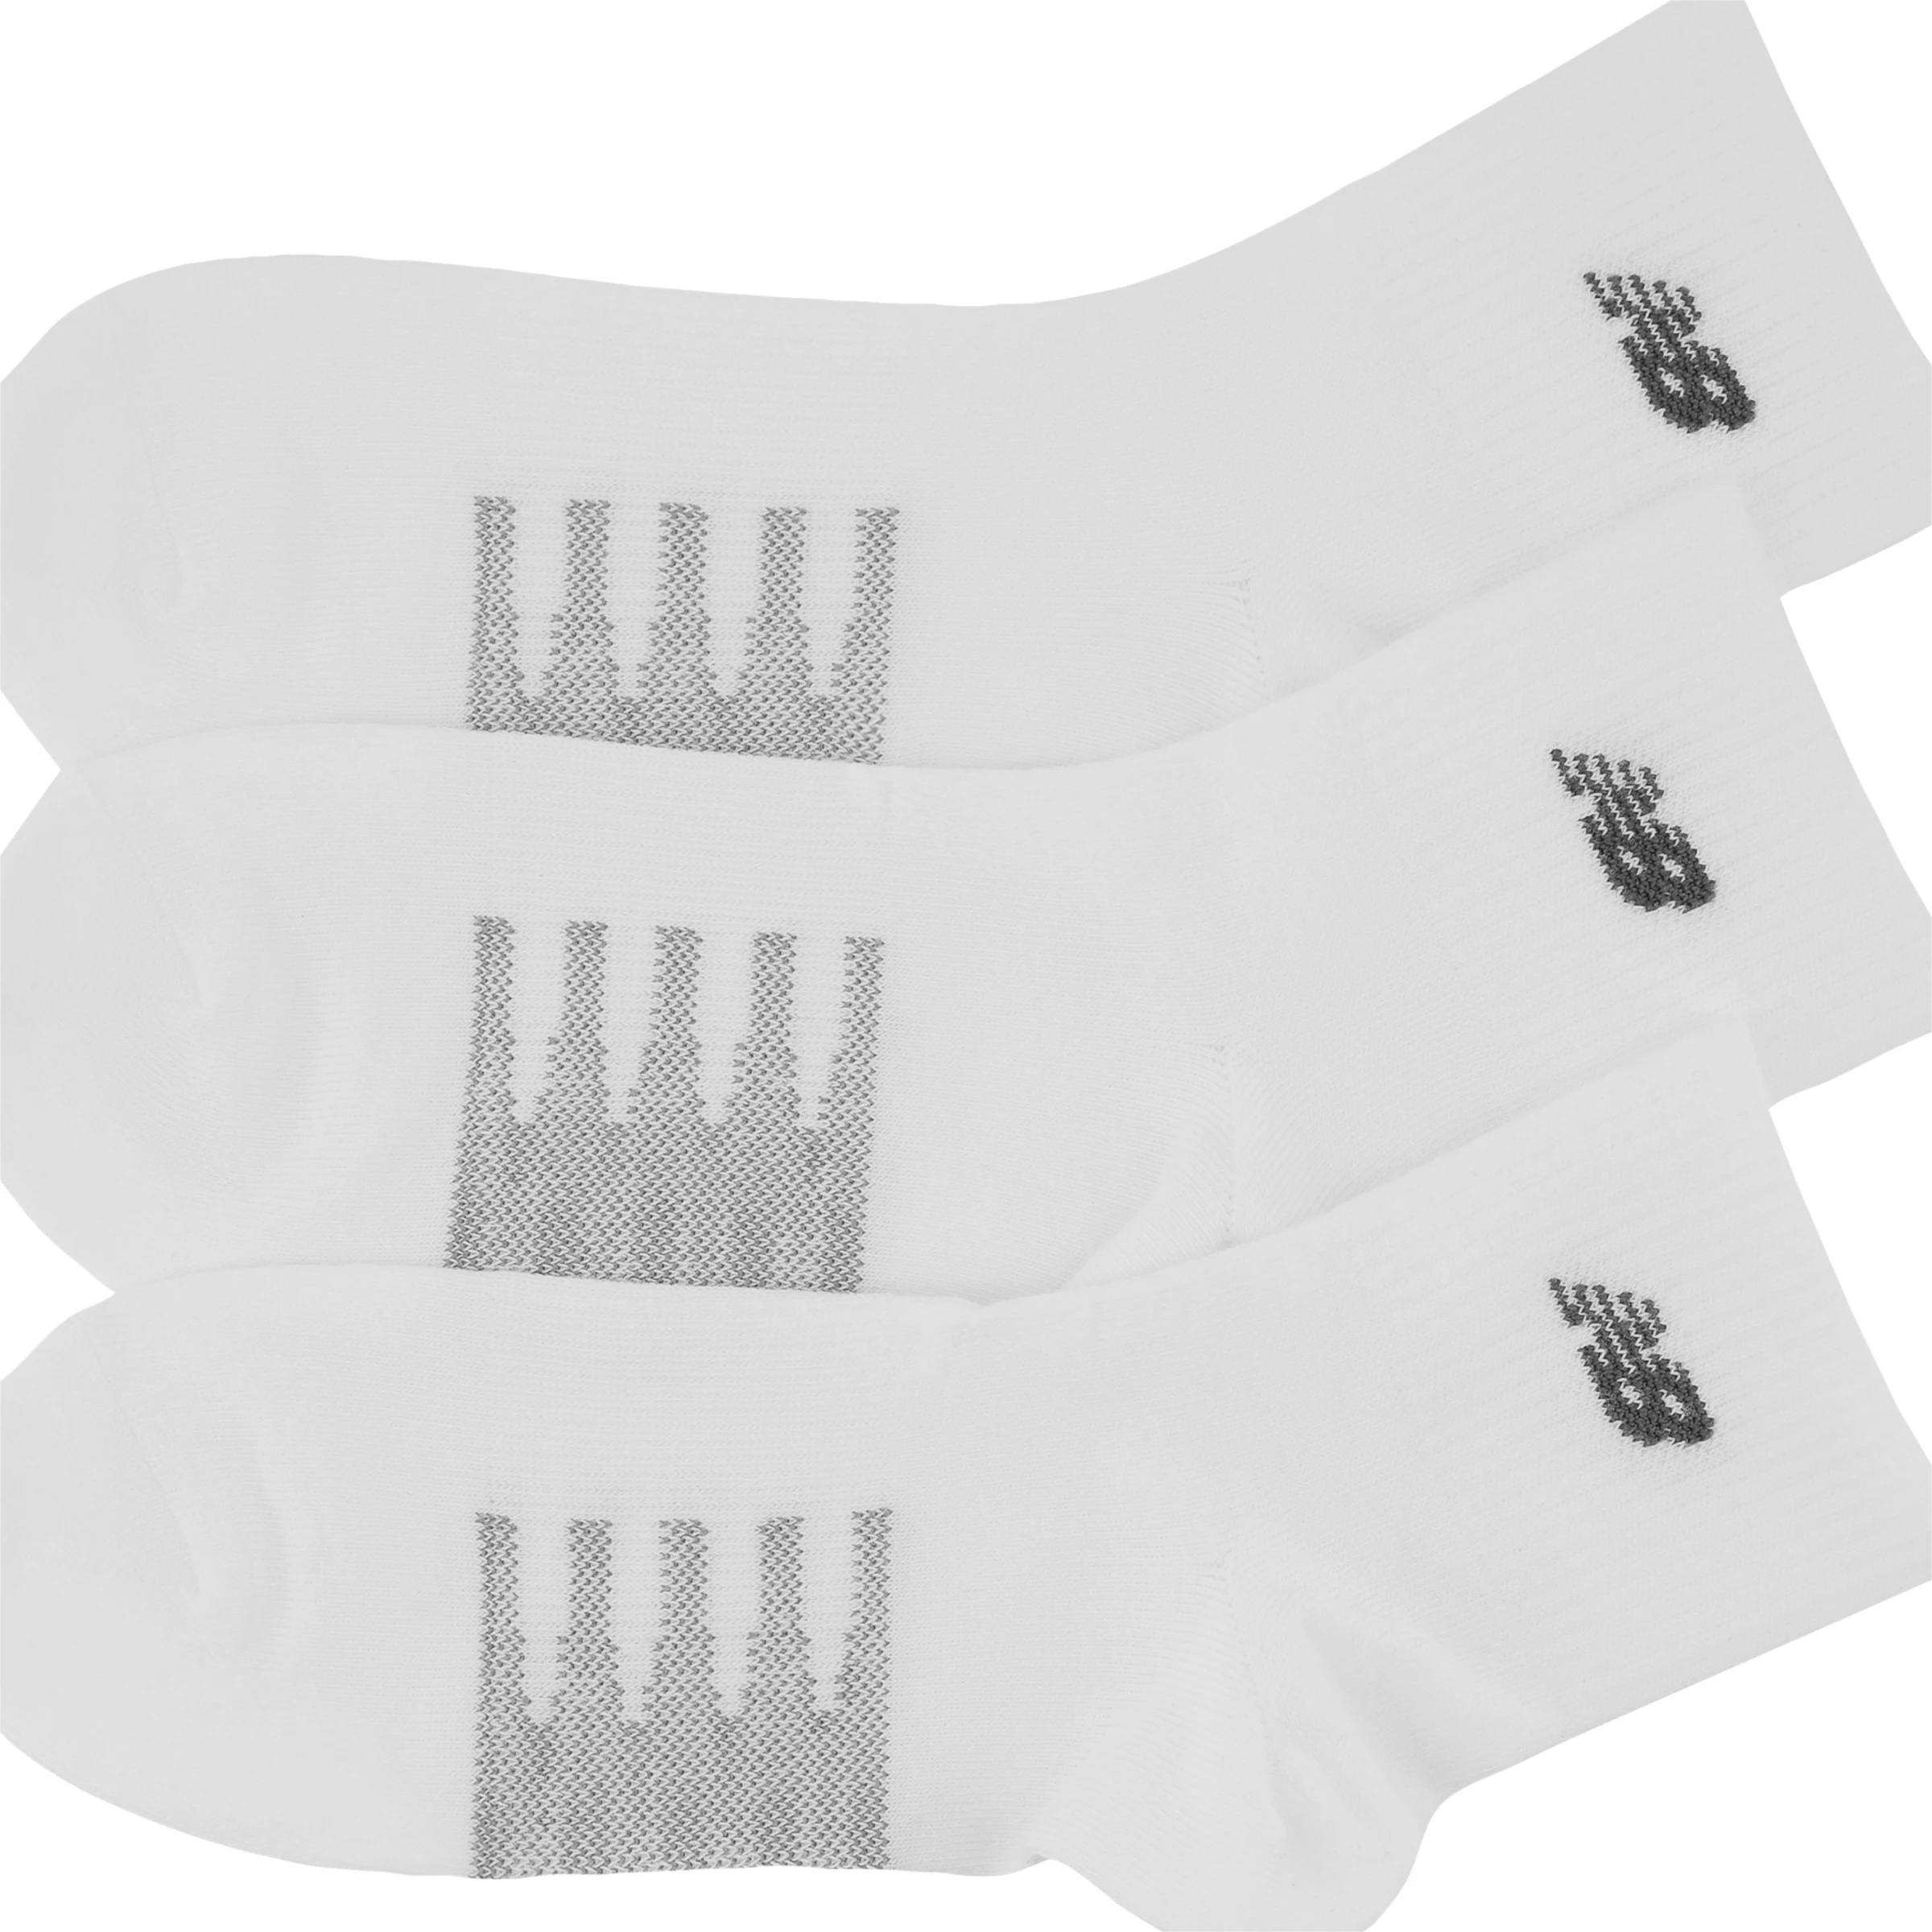 Coolmax Thin Quarter Socks 2 Pack - 2